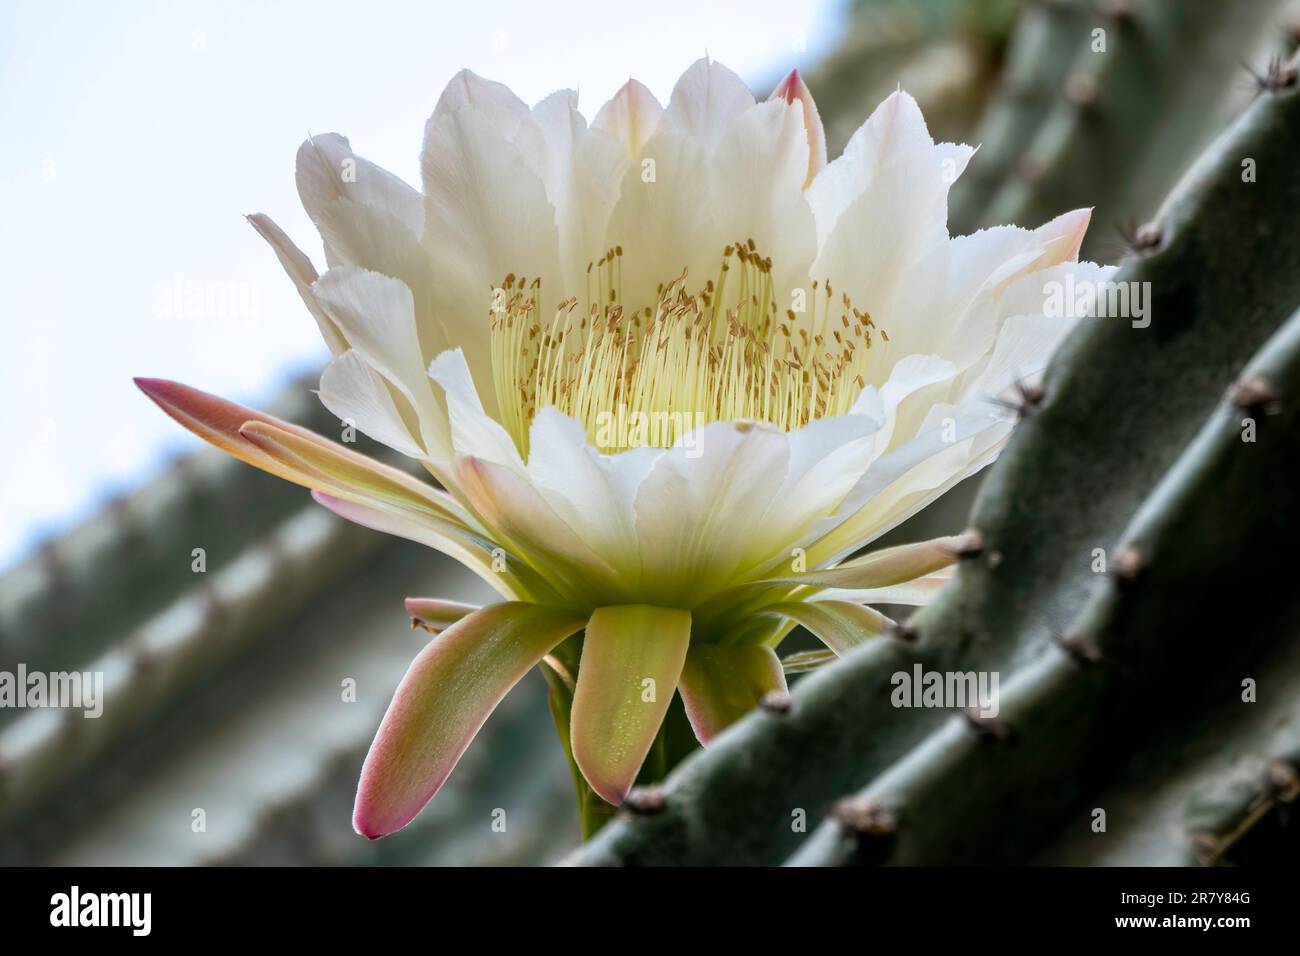 Peruvian apple cactus or Hedge cactus or Cereus hildmannianus in full bloom close up. Israel Stock Photo